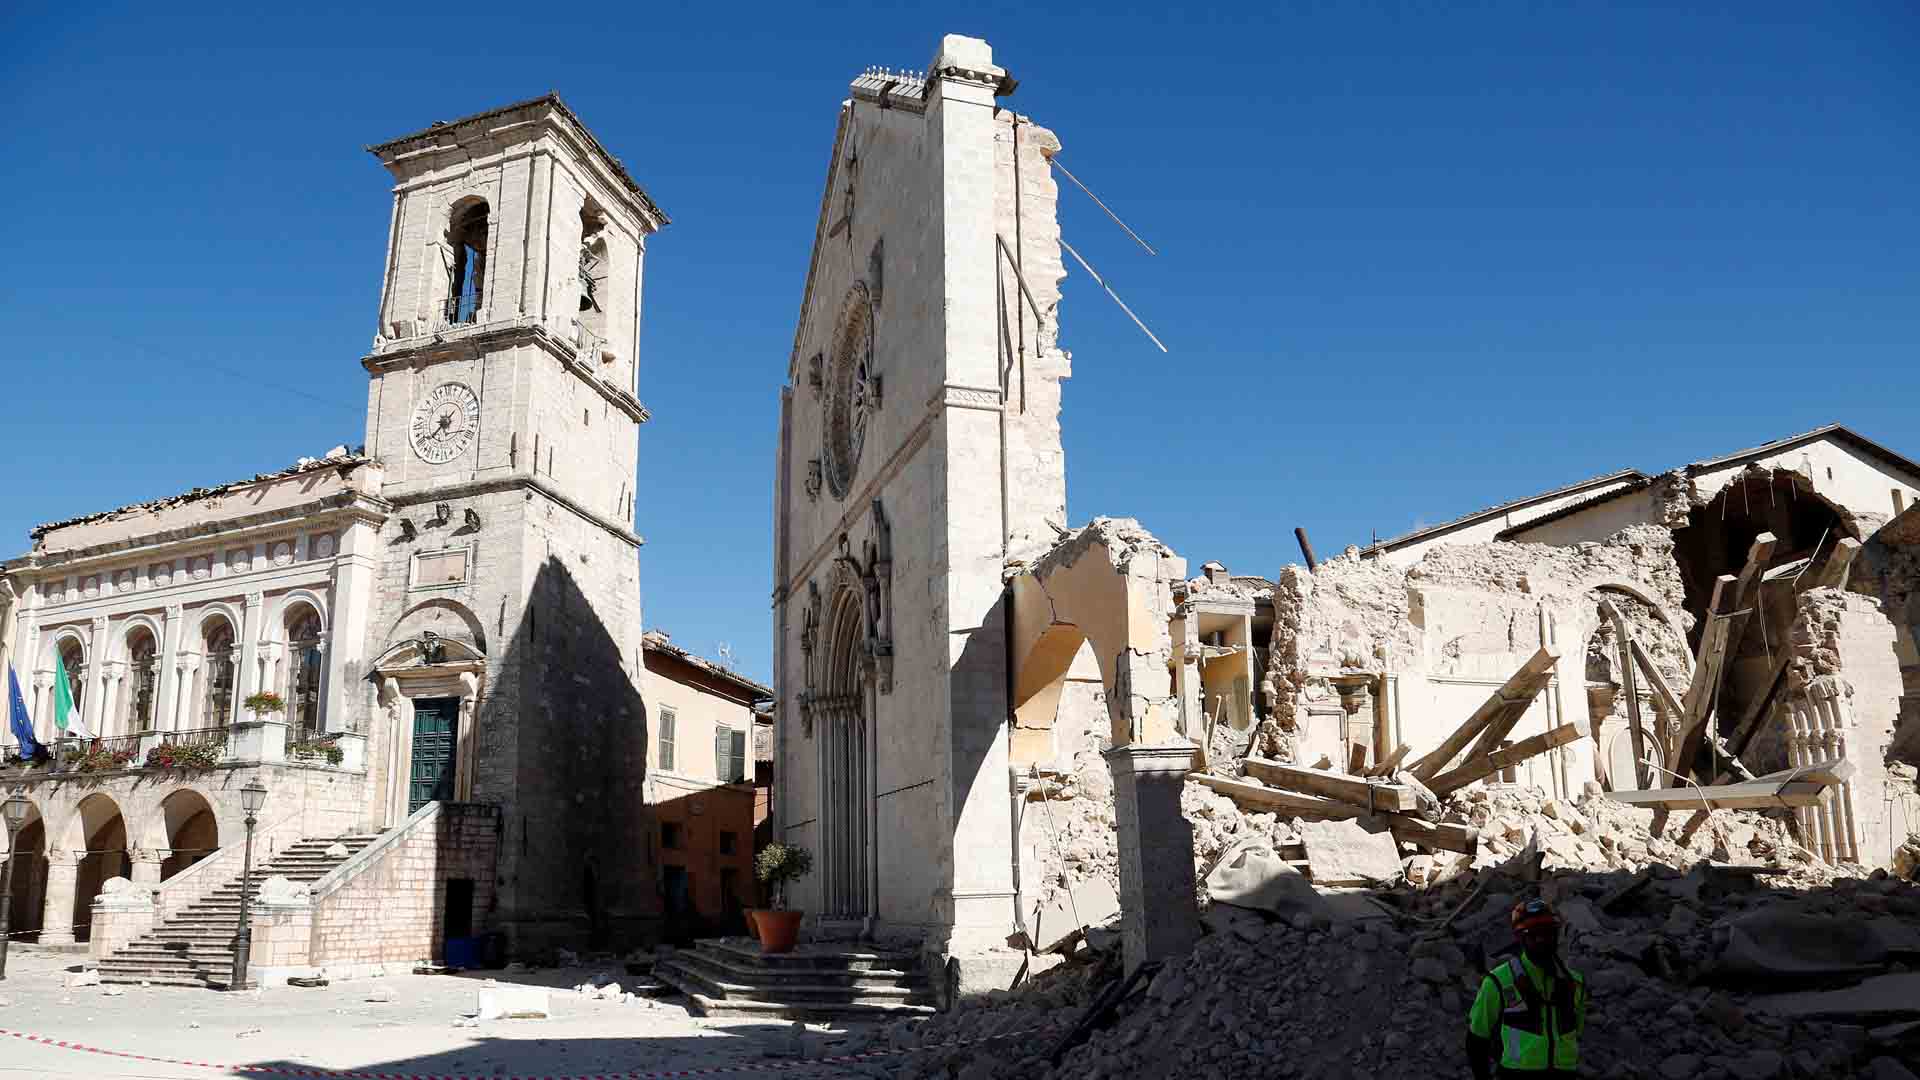 Debido al terremoto producido este fin de semana en el país europeo, las autoridades del Gobierno alemán han puesto a disposición su colaboración